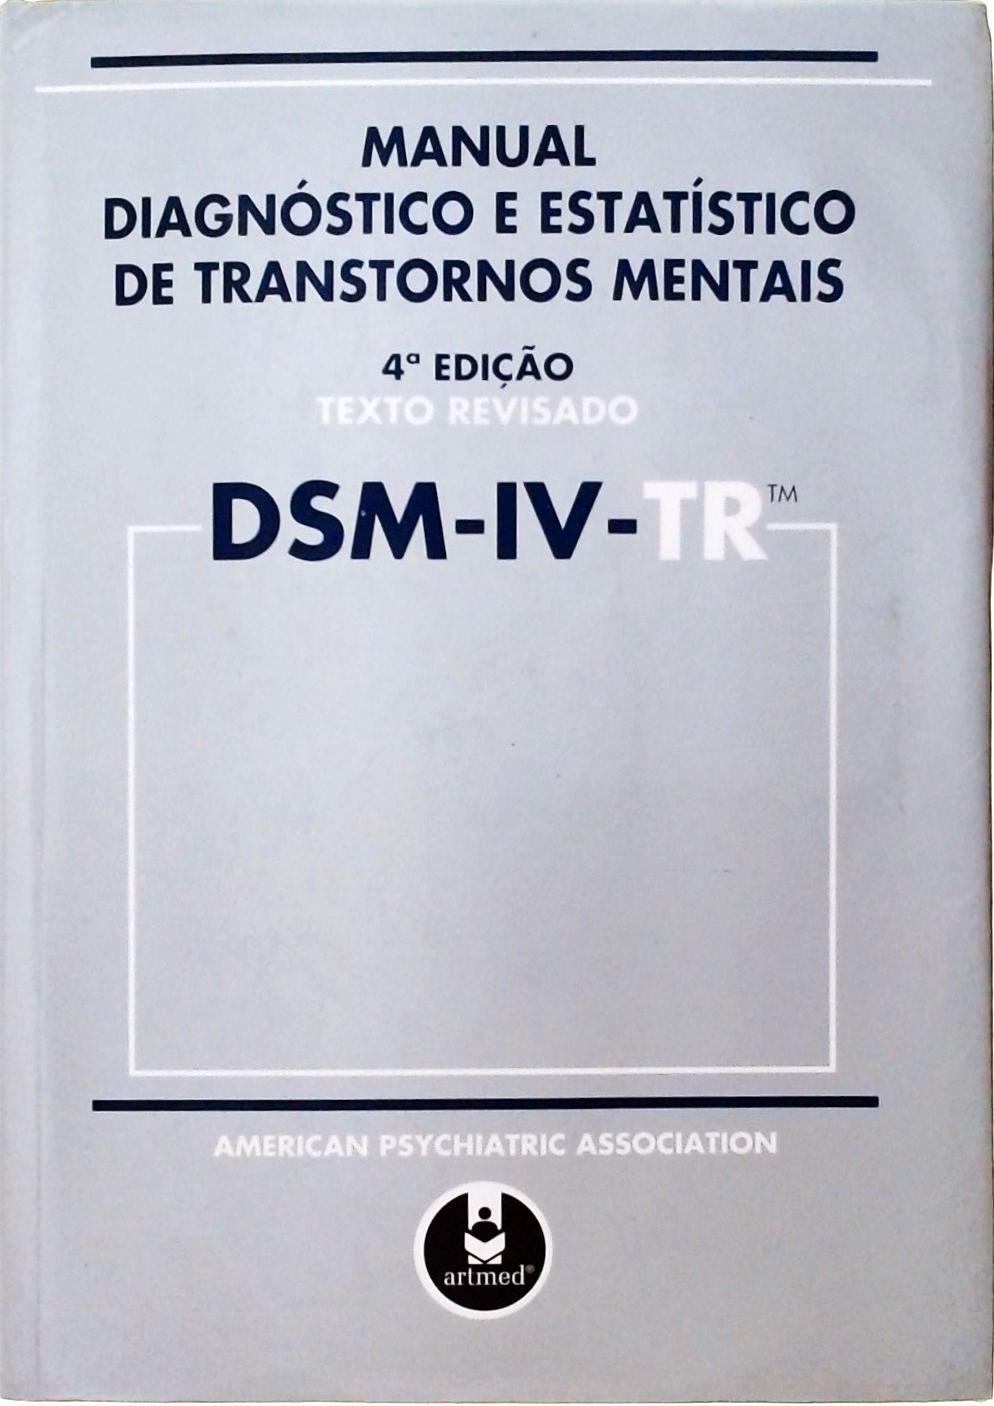 DSM-IV-TR - Manual Dignóstico E Estatístico De Transtornos Mentais